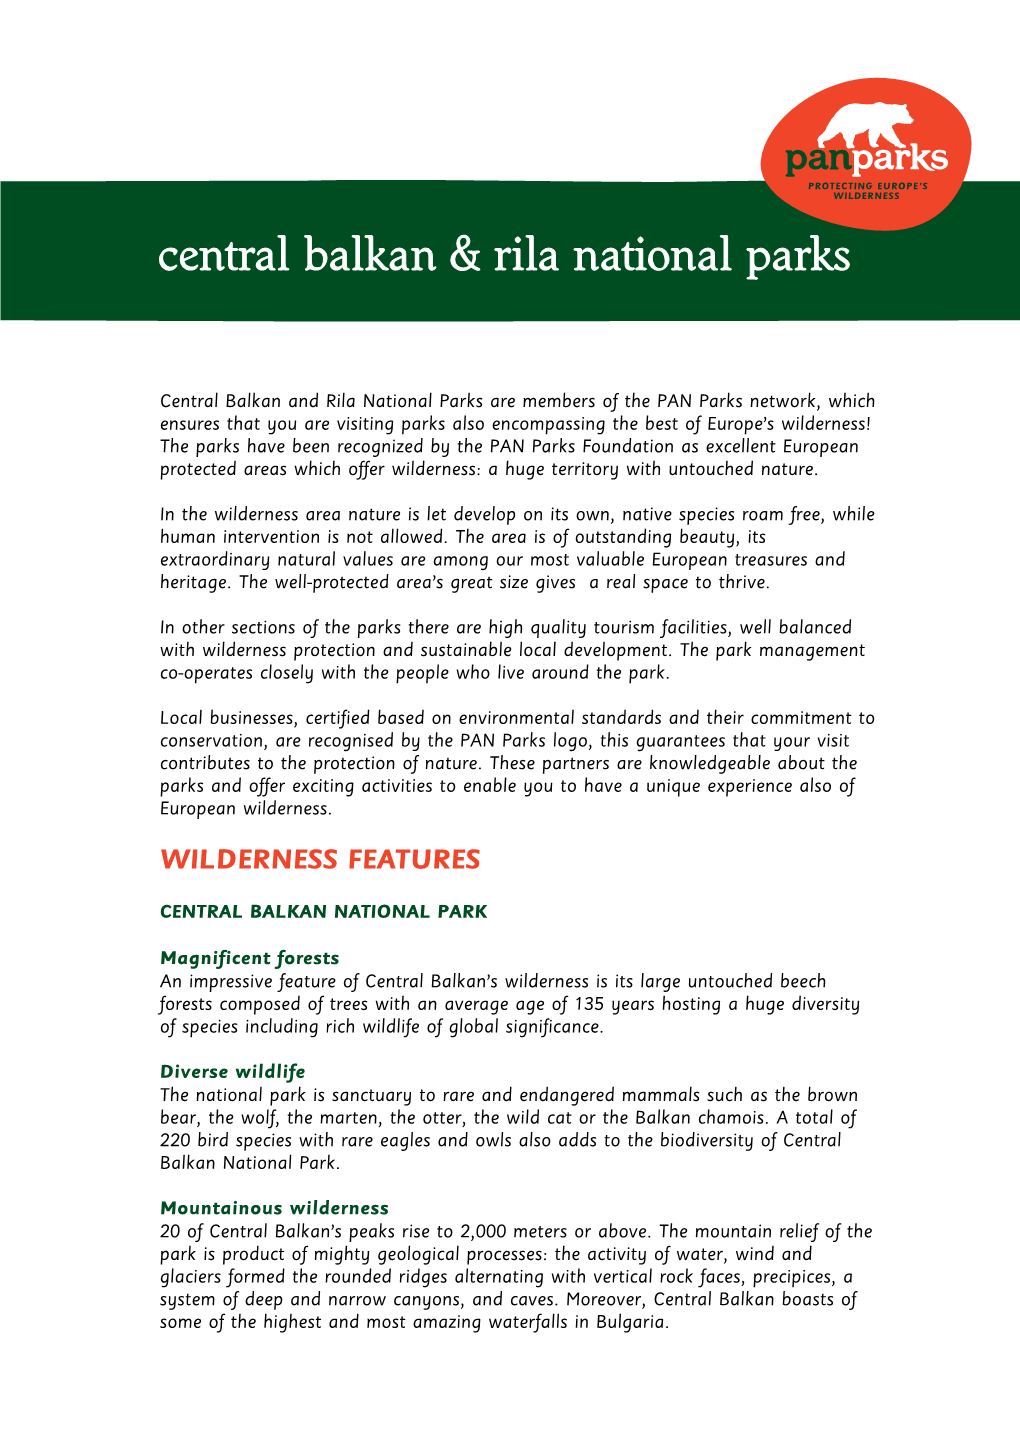 Central Balkan & Rila National Parks